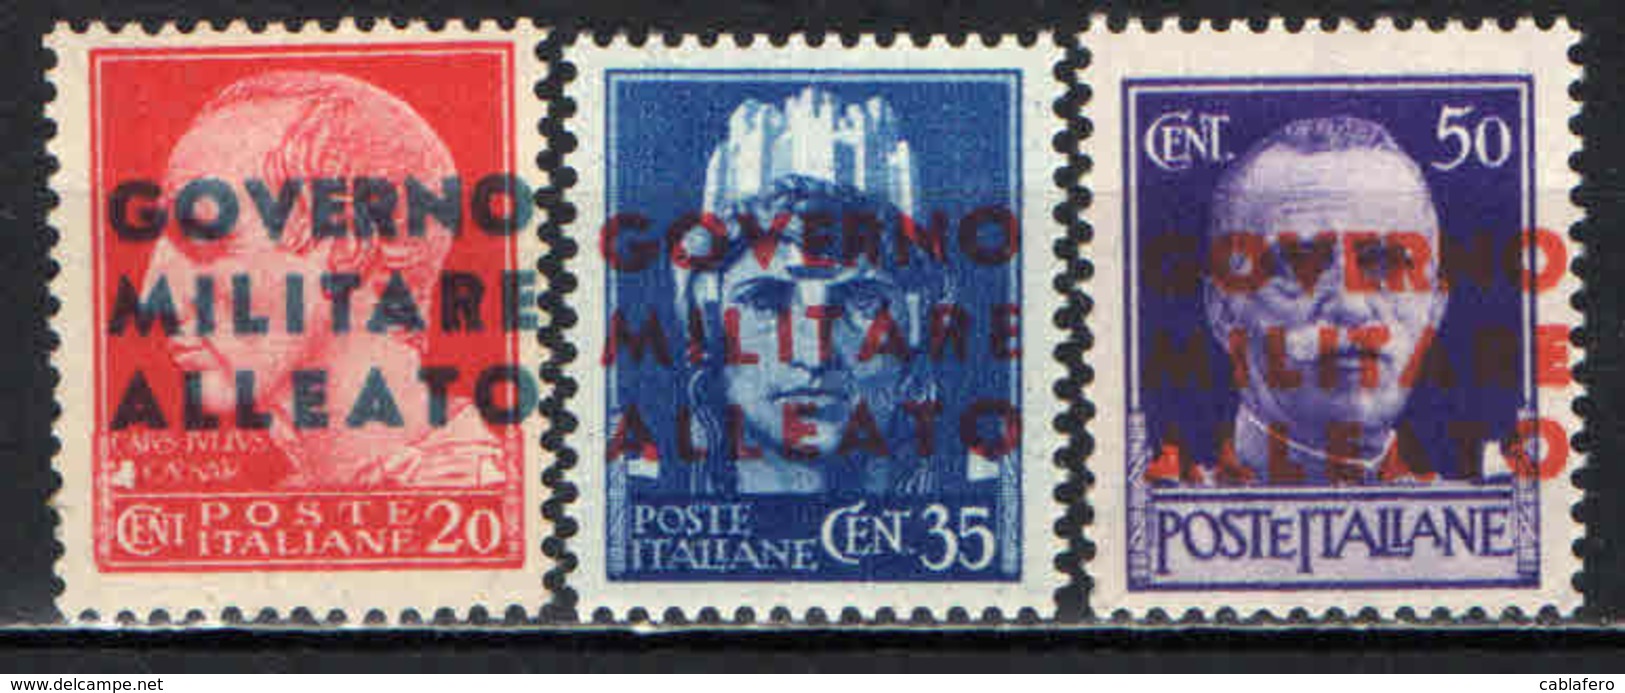 ITALIA - OCCUPAZIONE ANGLO-AMERICANA - 1943 - NAPOLI - MNH - Anglo-american Occ.: Naples